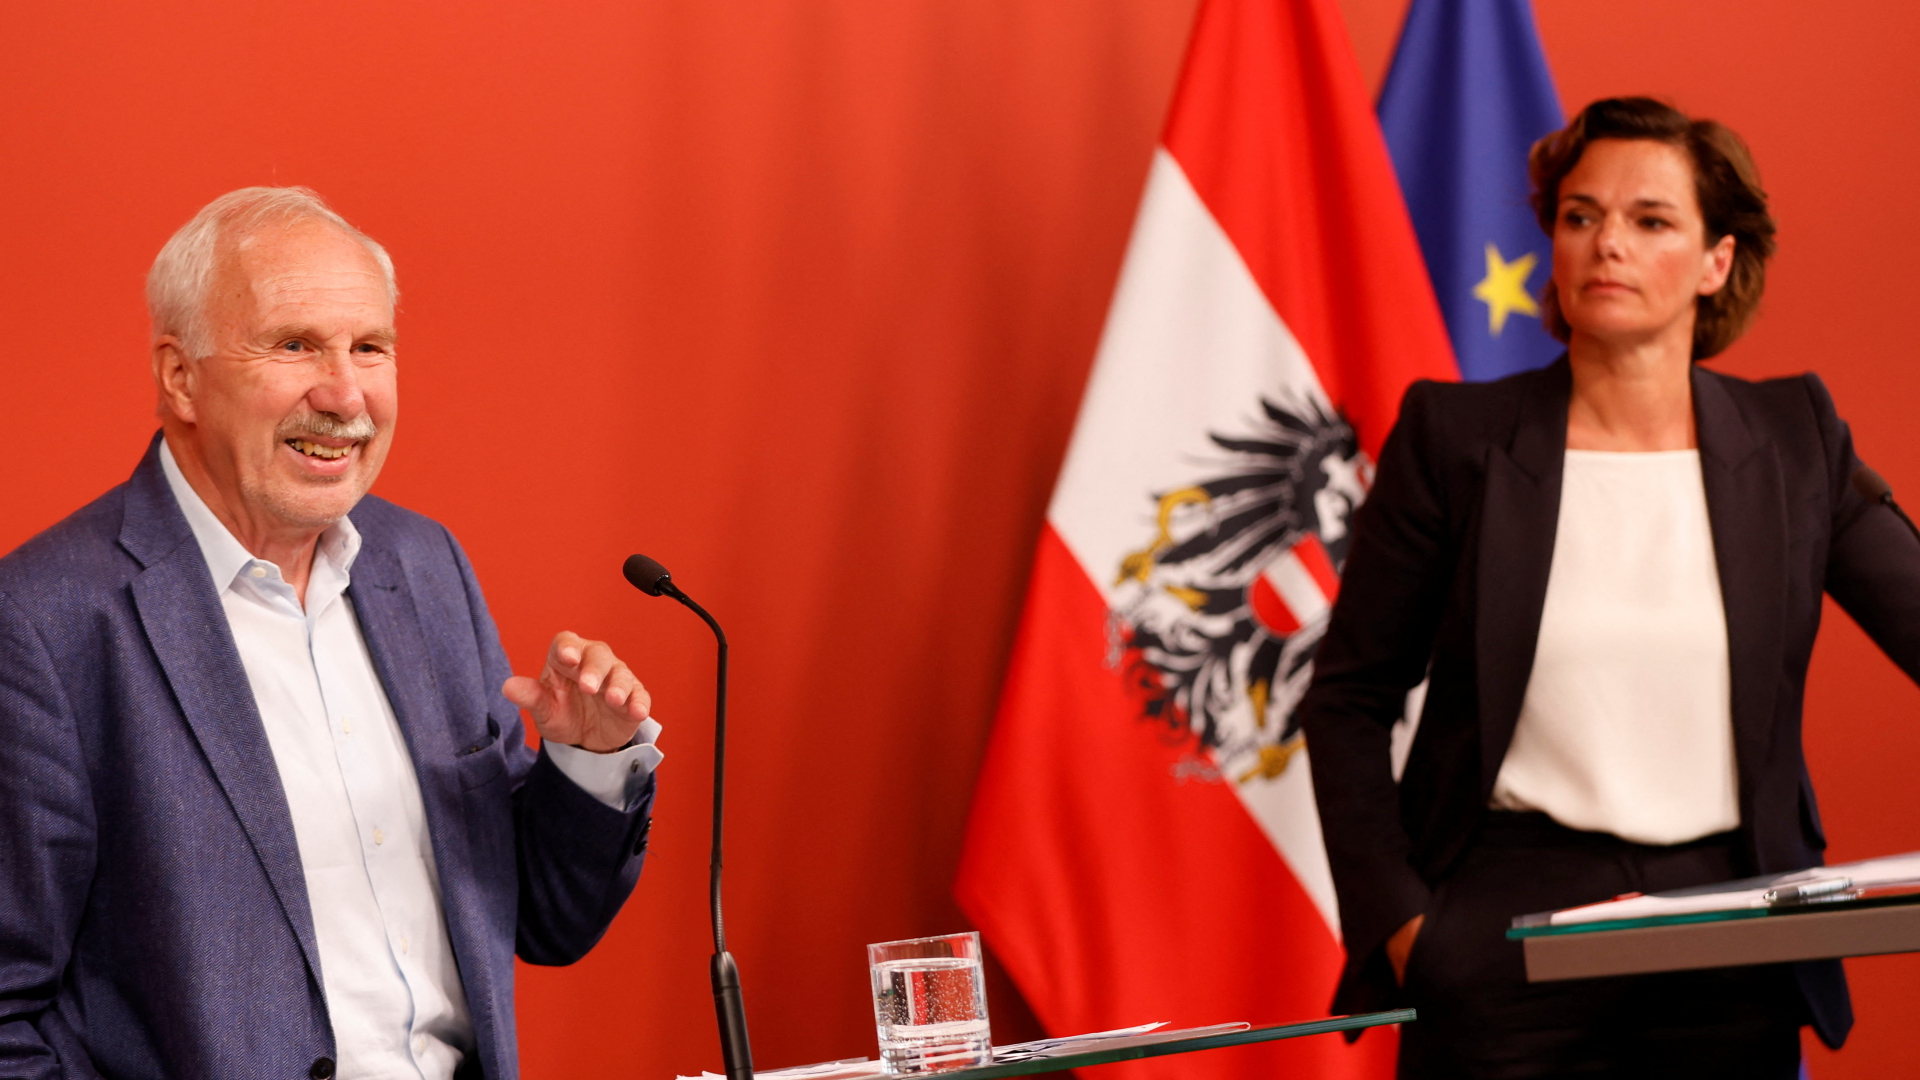 Ökonom Ewald Nowotny und SPÖ-Chefin Pamela Rendi-Wagner bei einer Pressekonferenz zur hohen Inflation in Österreich. | REUTERS